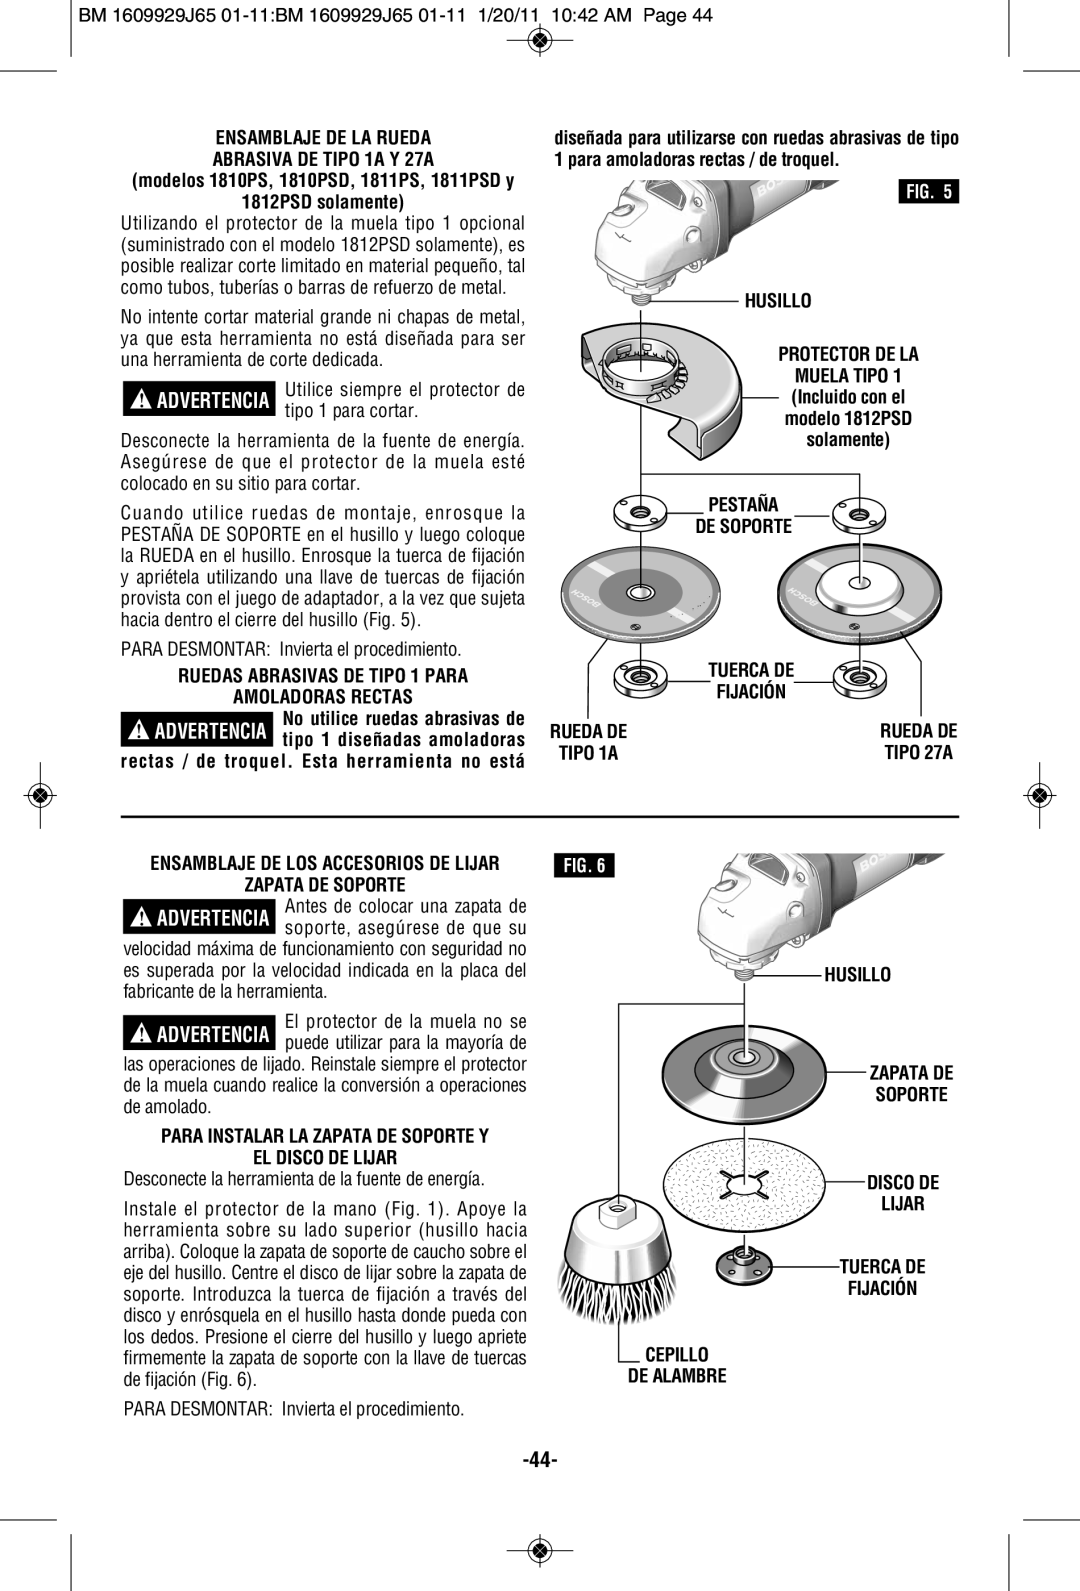 Bosch Power Tools manual ENSAMBLAJE DE LA RUEDA ABRASIVA DE TIPO 1A Y 27A, 1812PSD solamente, Husillo, Zapata De Soporte 